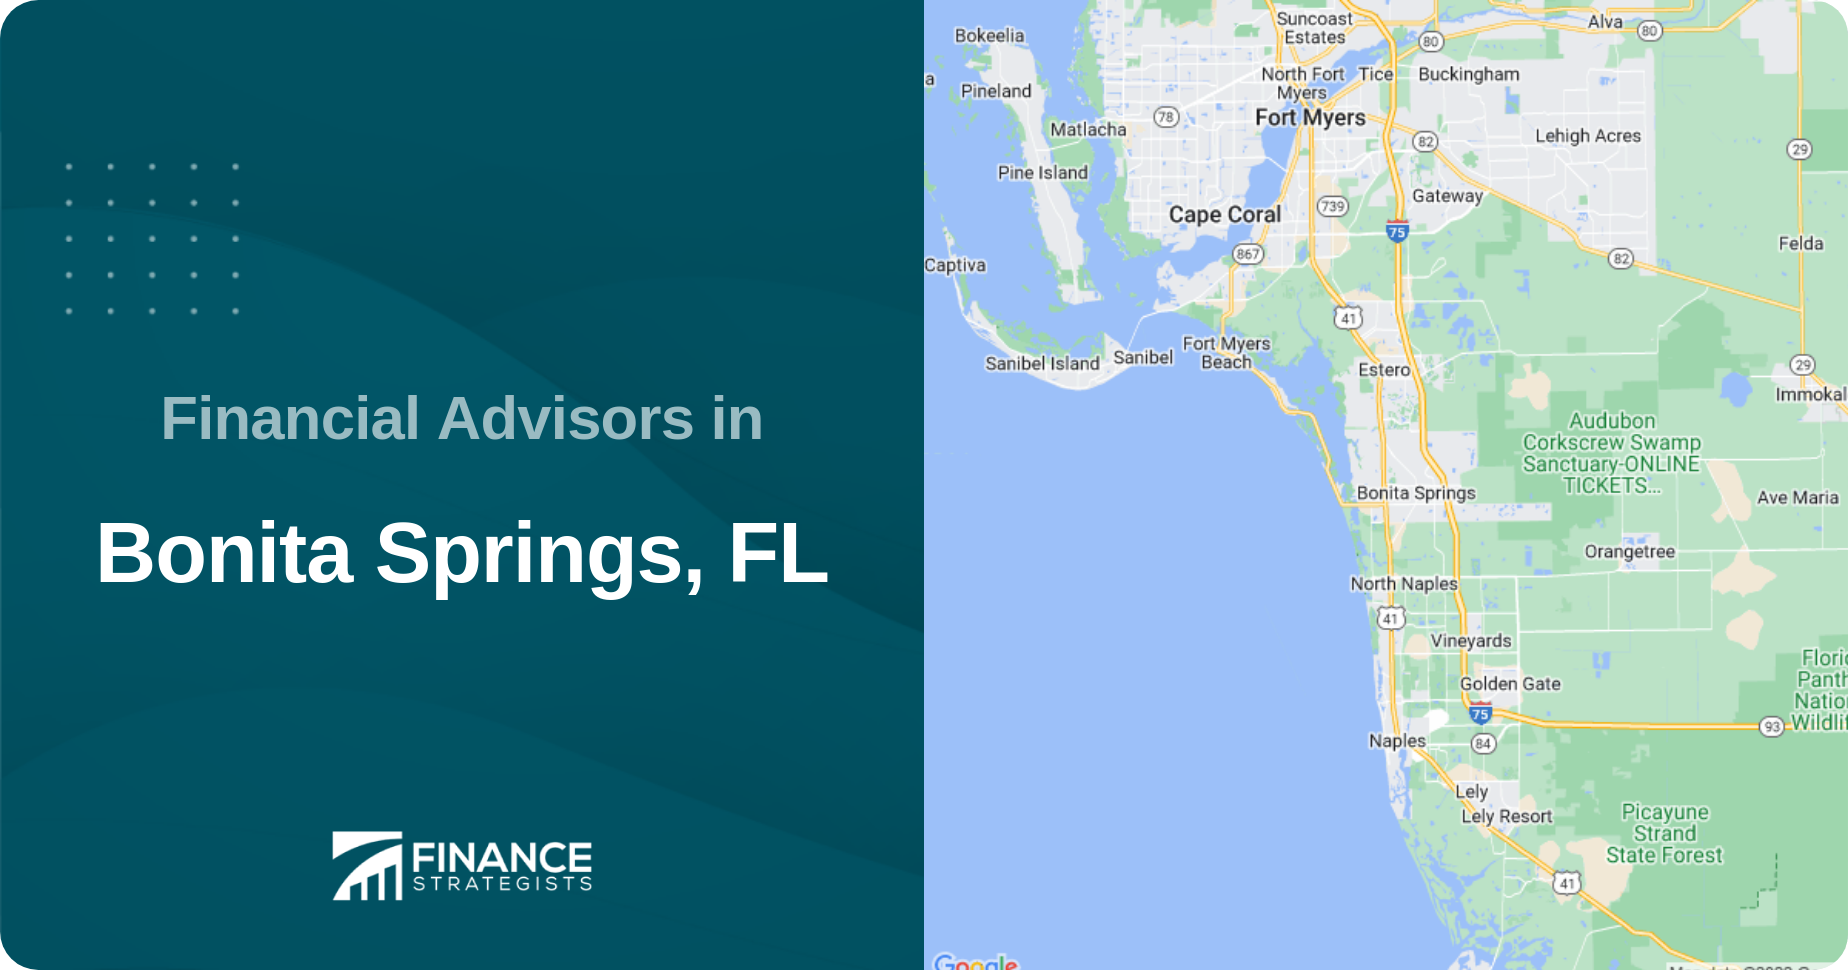 Financial Advisors in Bonita Springs, FL